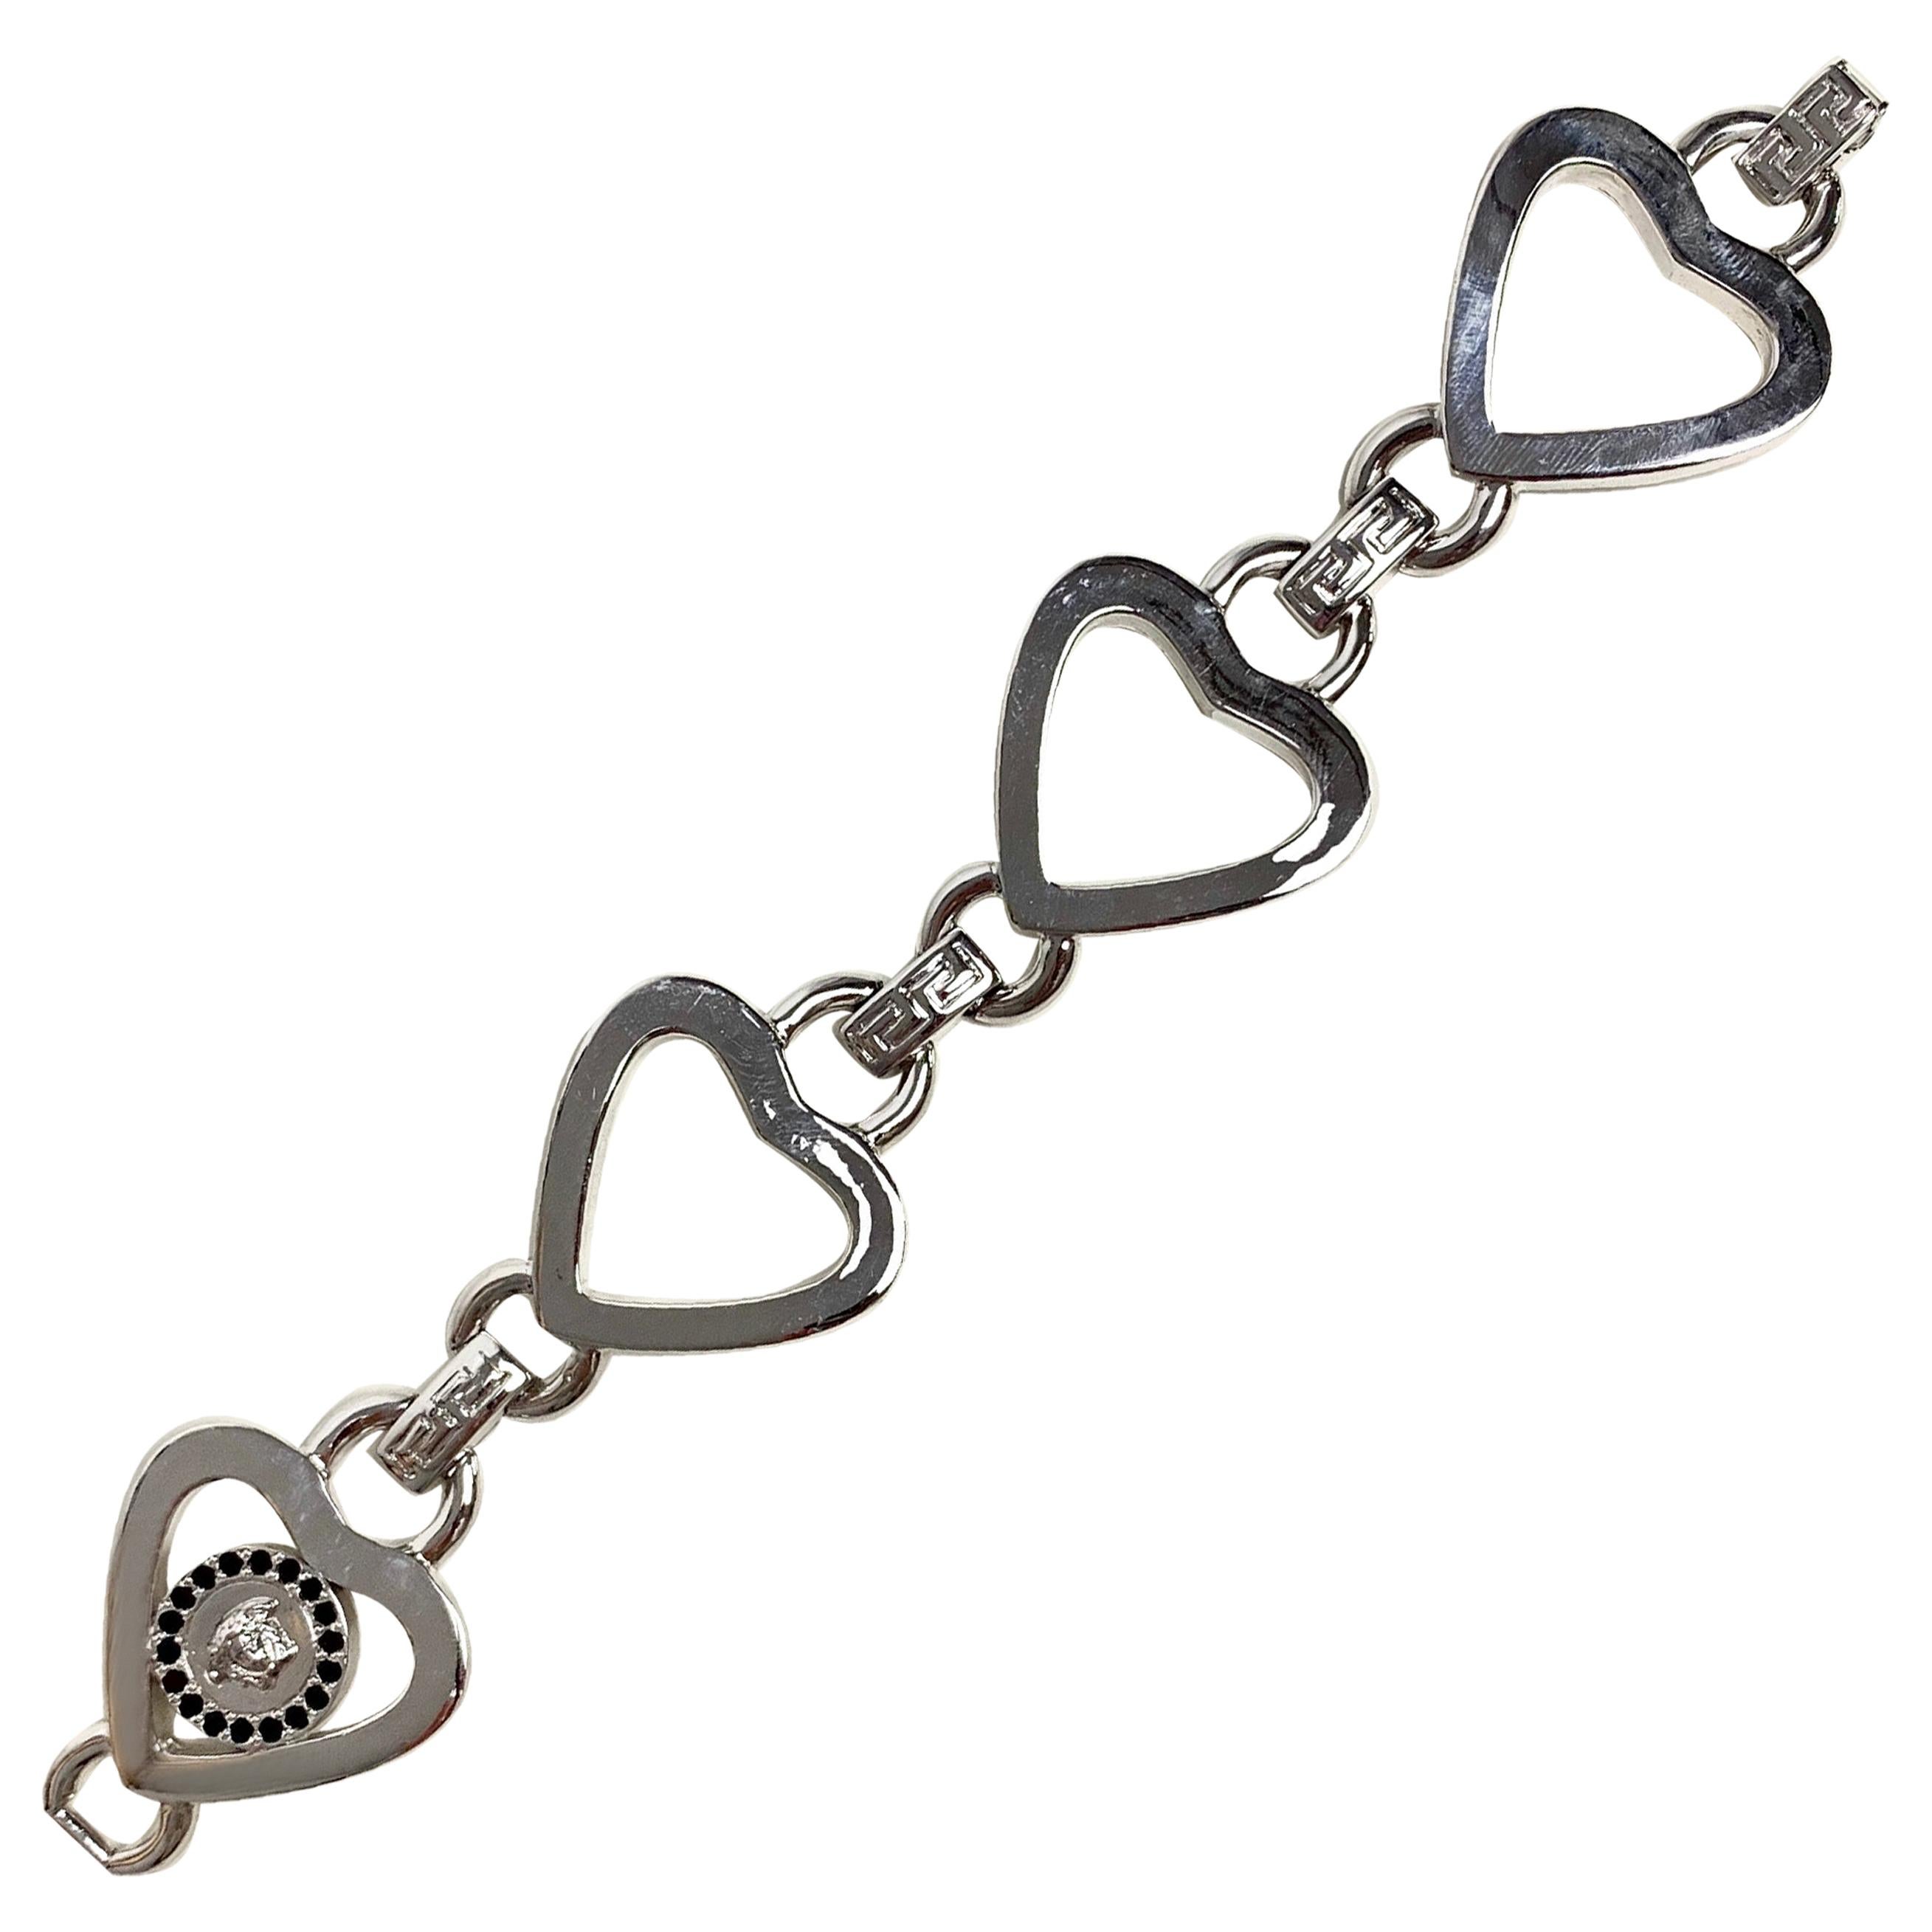 Gianni Versace 1990’s silver love heart link bracelet 